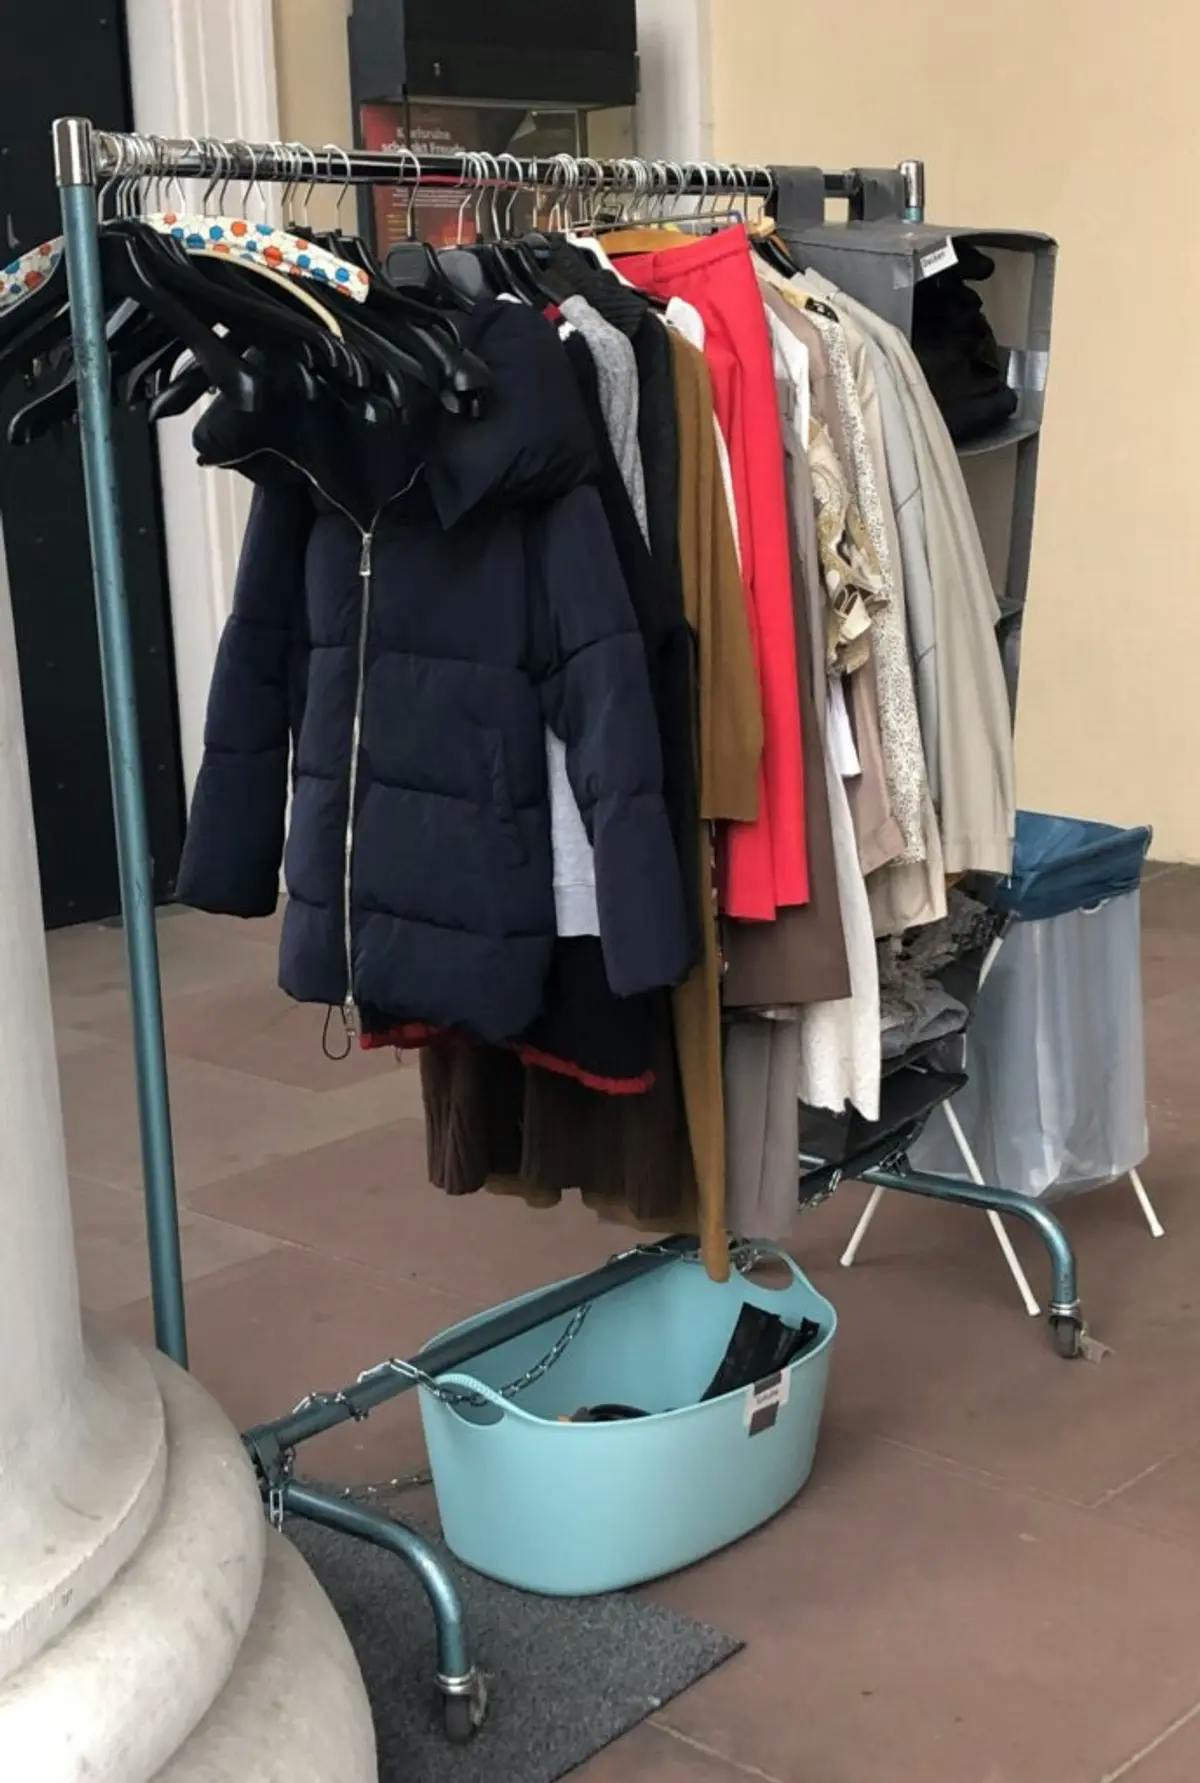 Ein Foto von der öffentliche Kleiderstange und -behälter mit gespendeter Kleidung.